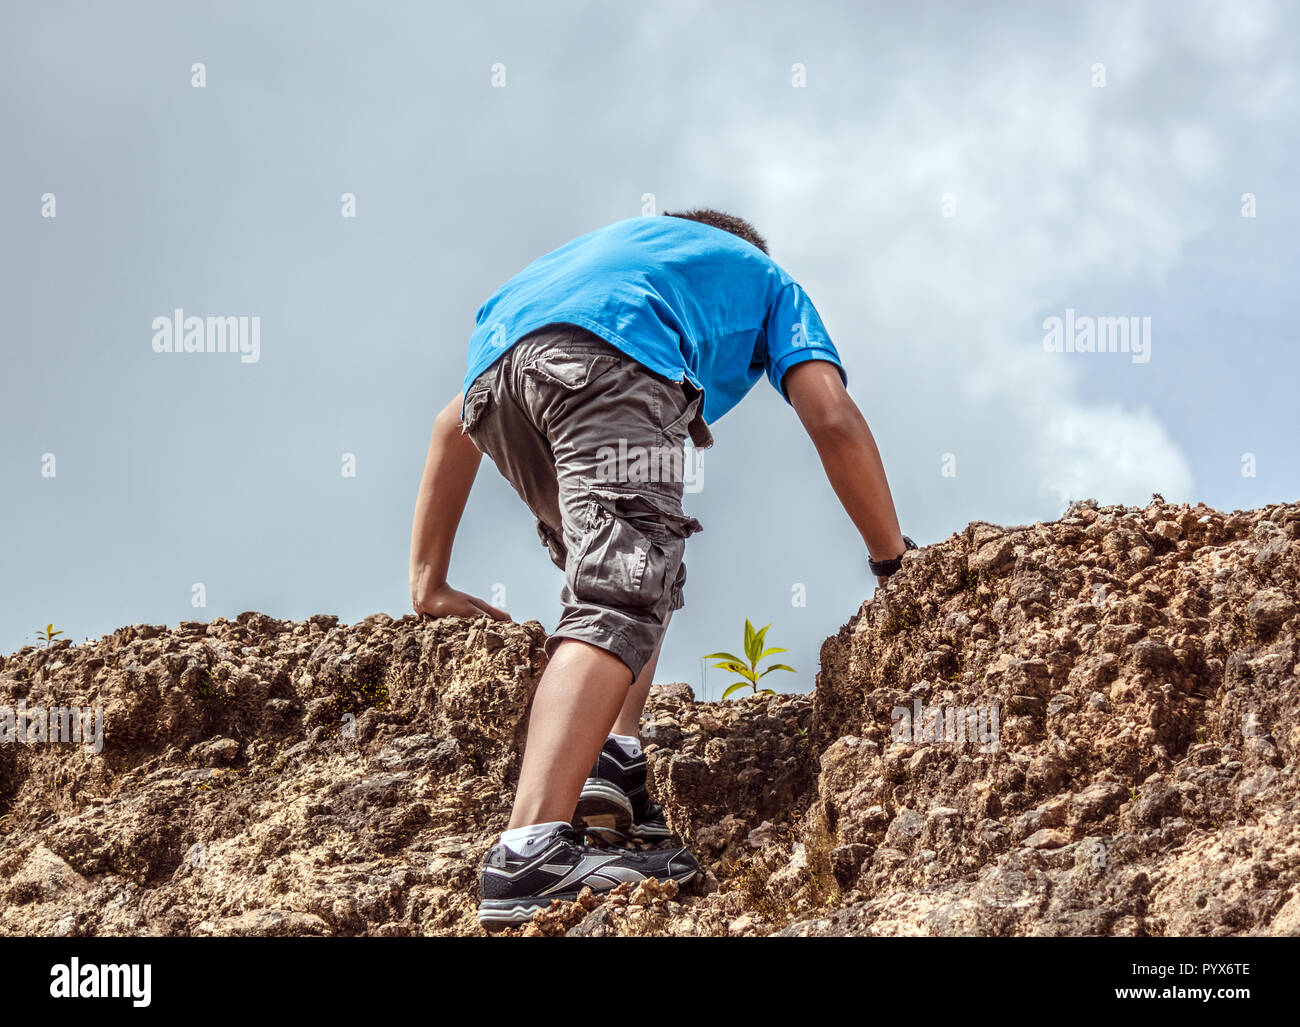 Young Man Climbing a Mountain Stock Photo